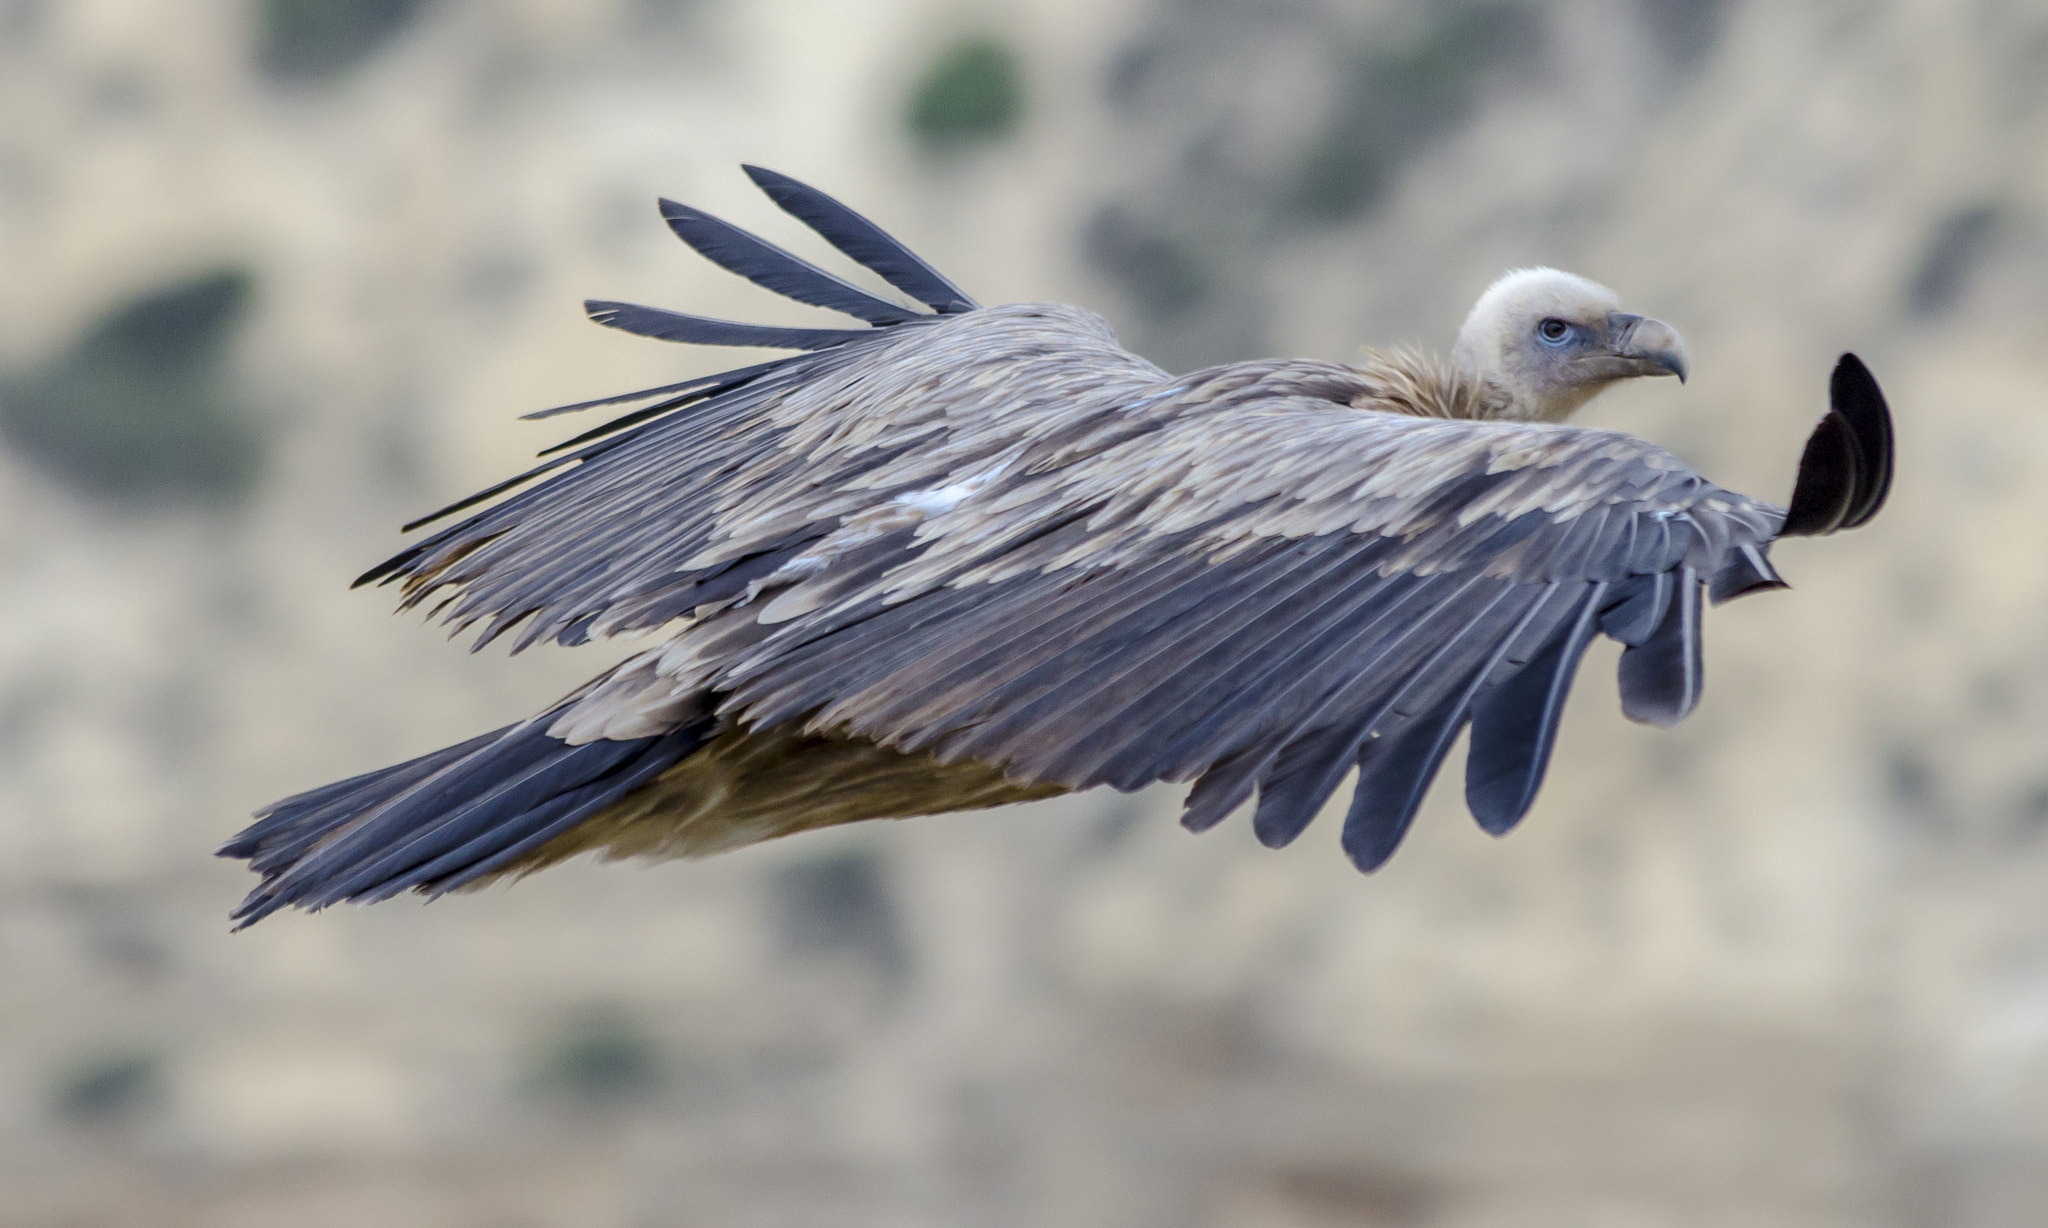 Nikon D7000 sample photo. Himalayan griffon vulture photography